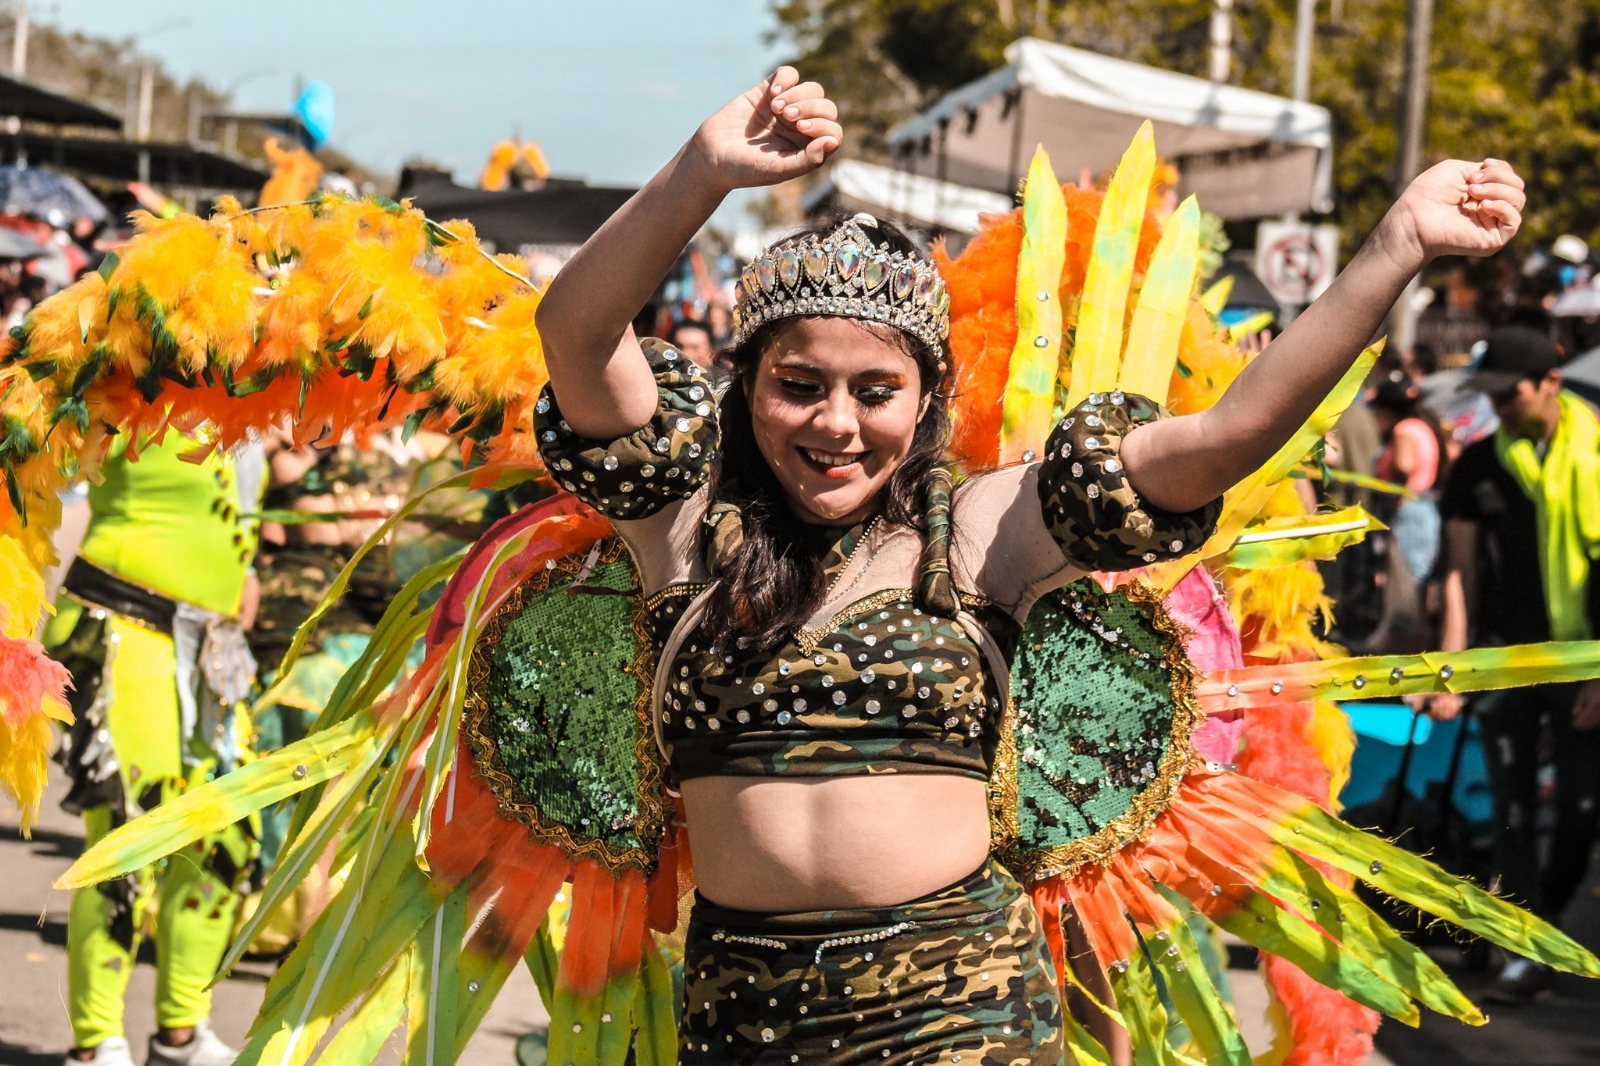 Rechazan Carnaval virtual de Mérida, hay necesidades más profundas, aseguran